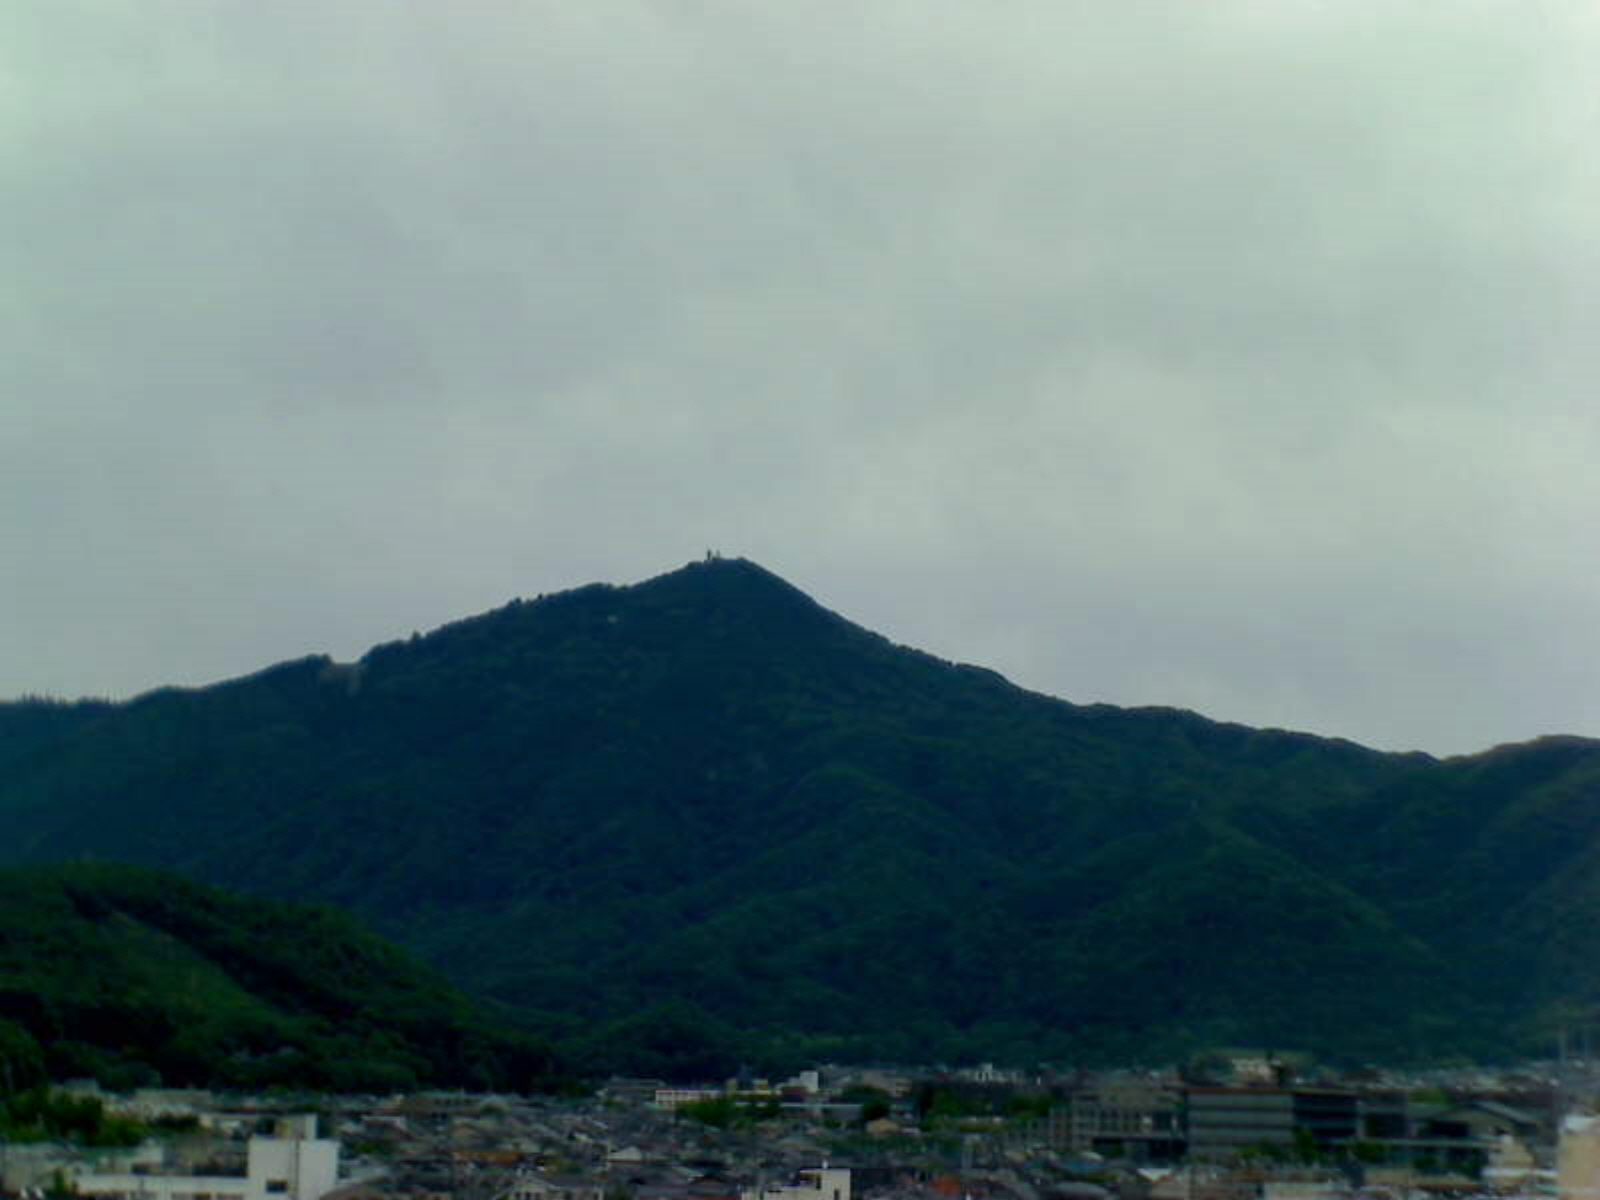 比叡山